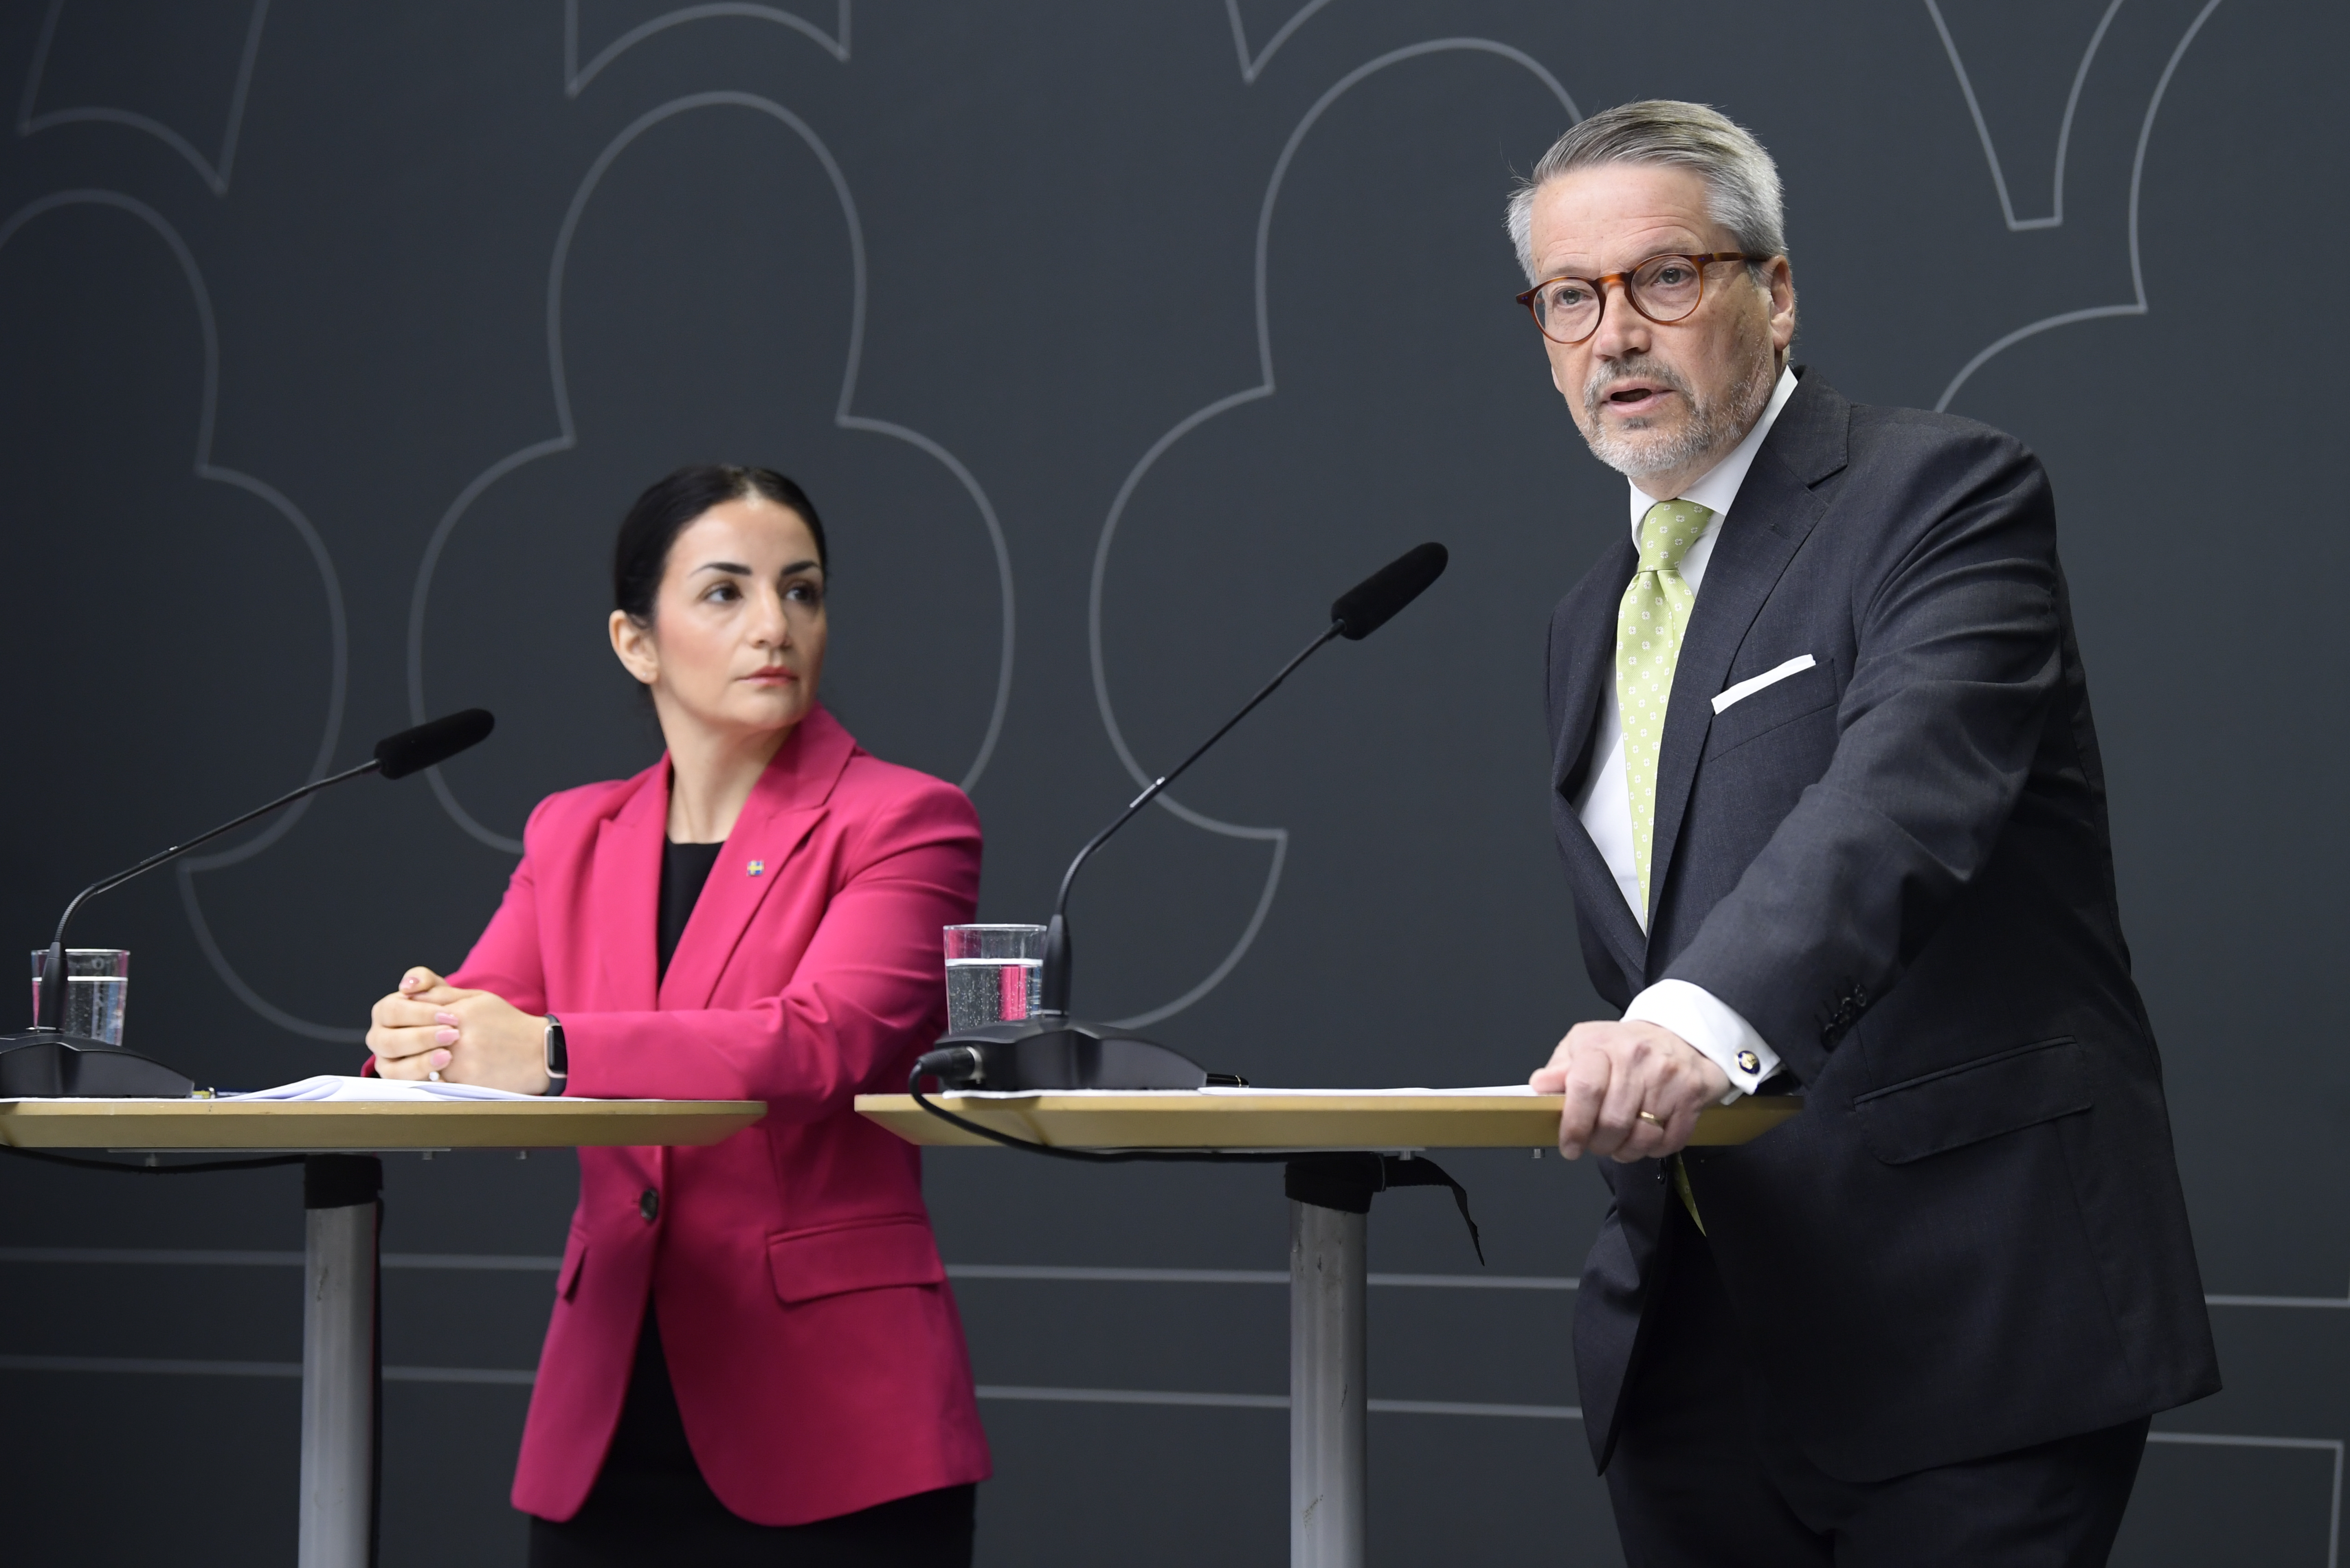 Kulturminister Parisa Liljestrand (M) tar emot betänkandet från kommitténs ordförande Göran Hägglund.